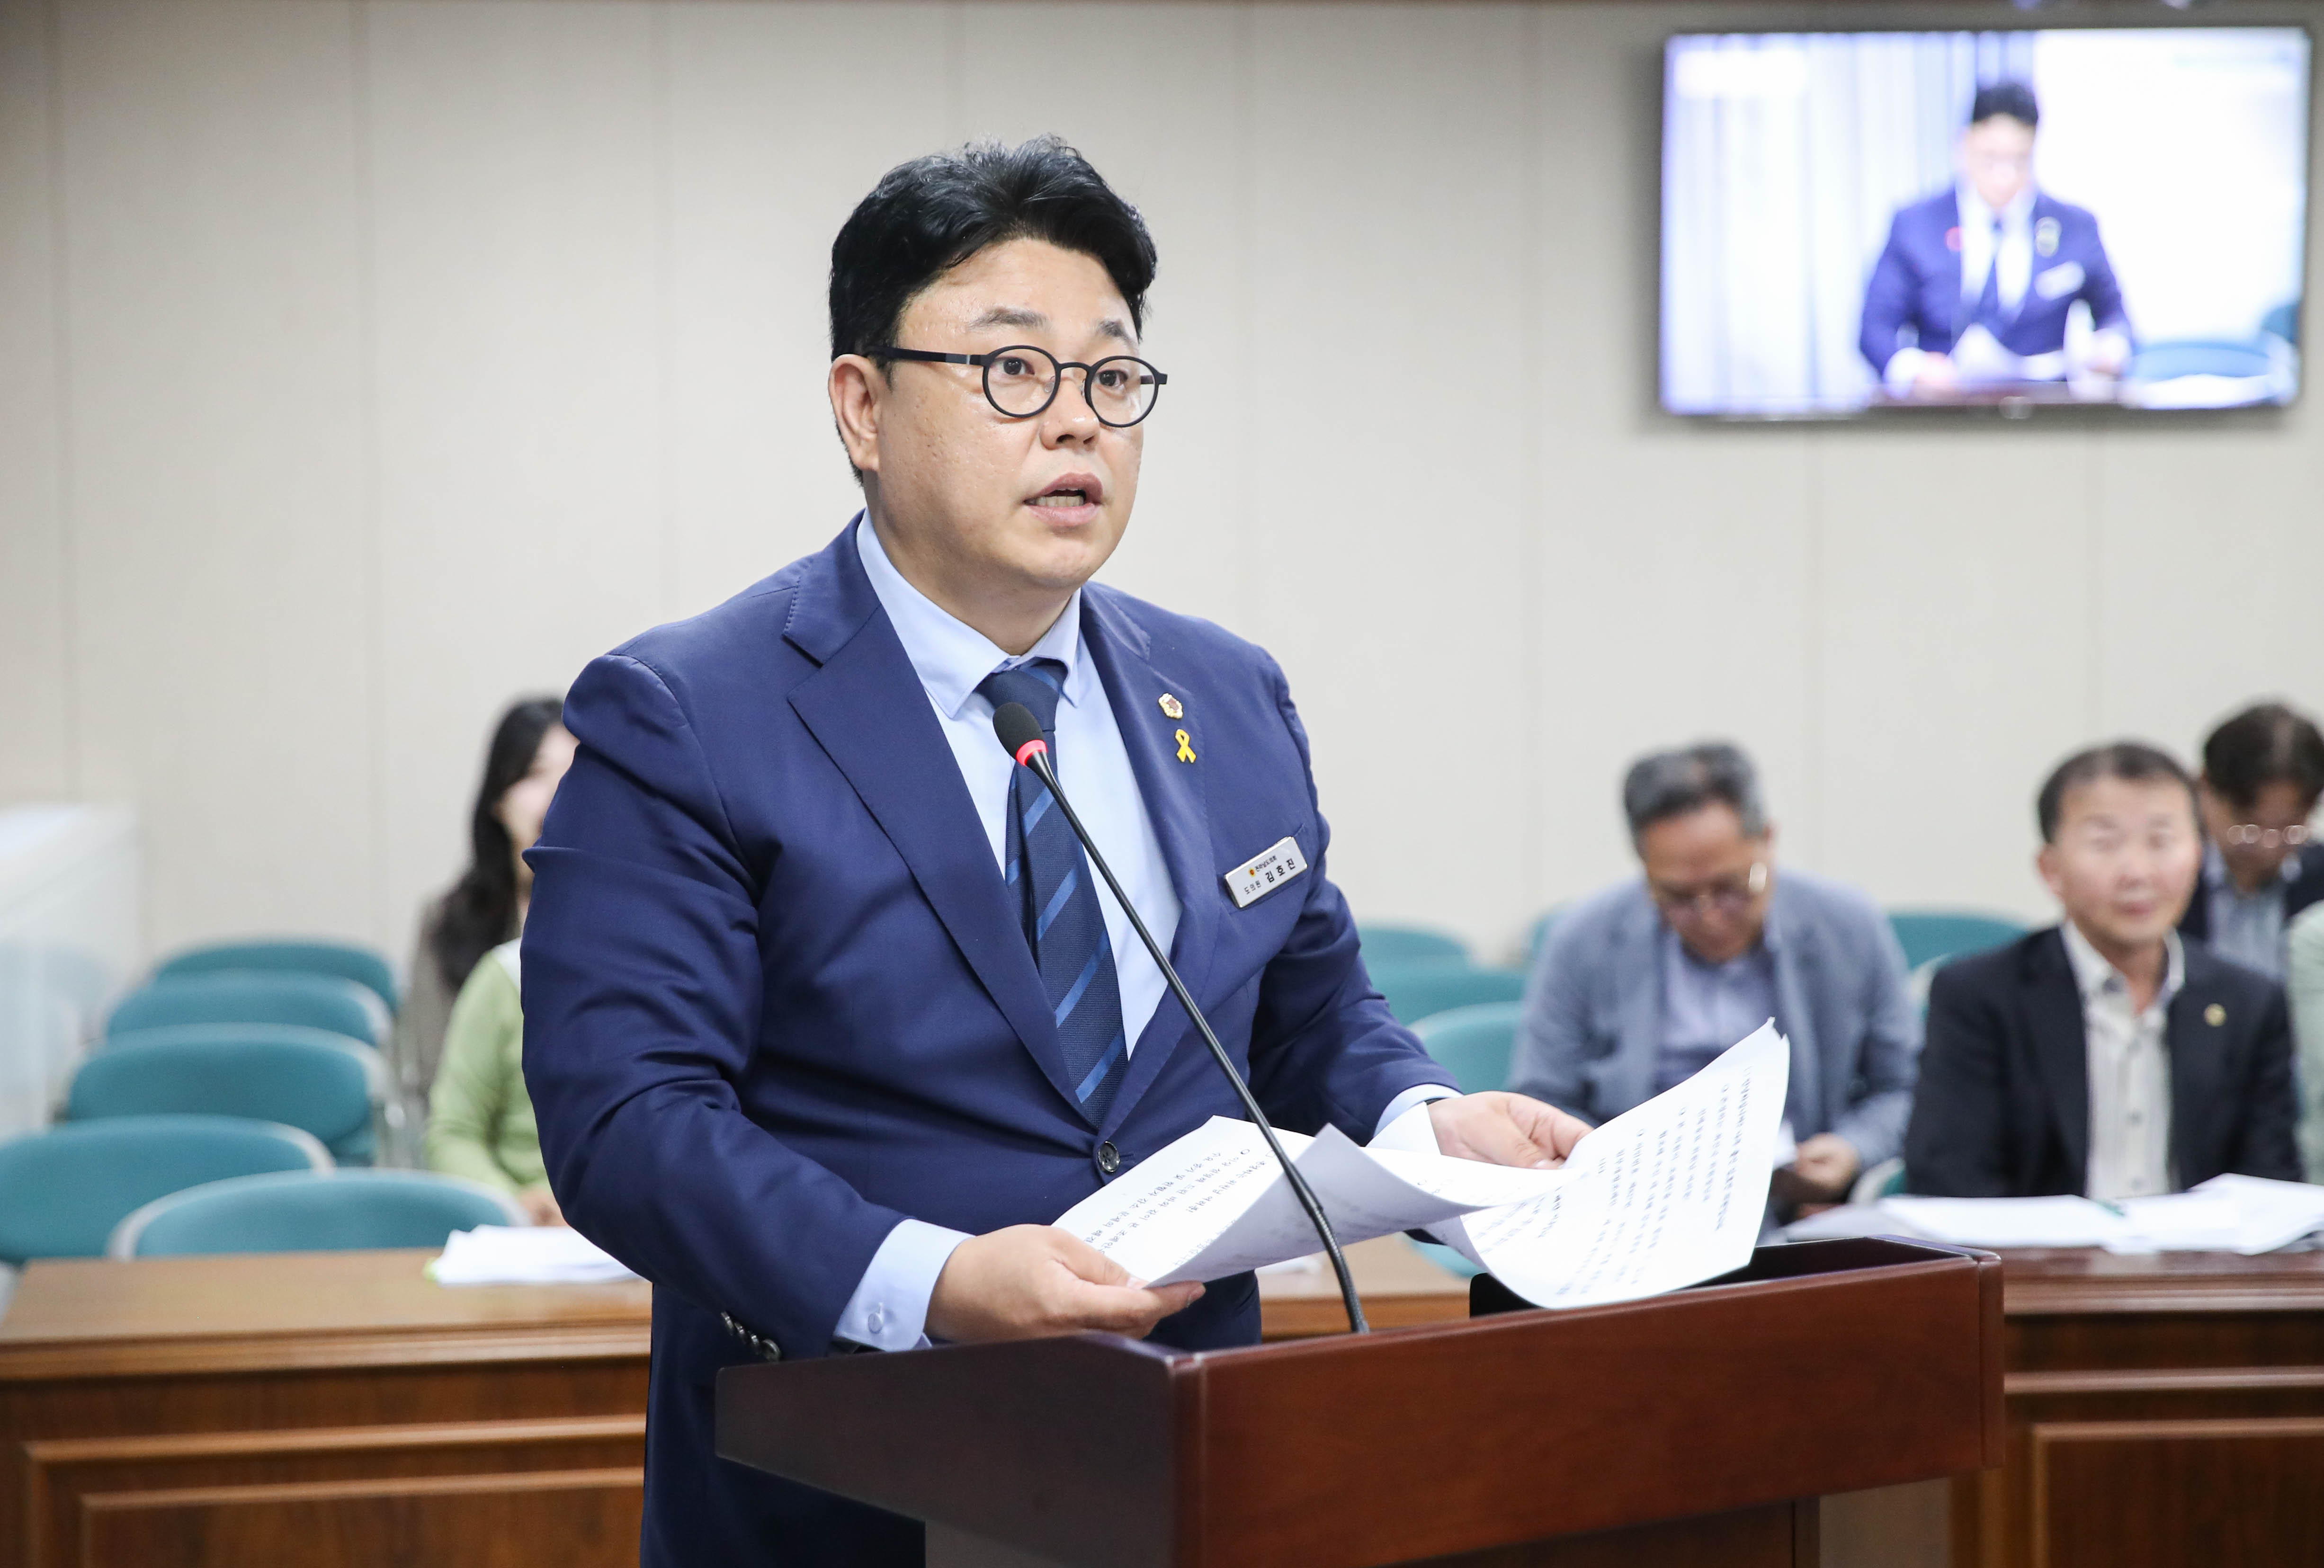 김호진 도의원, 안정적인 혈액 공급 위한 다각적 방안 마련